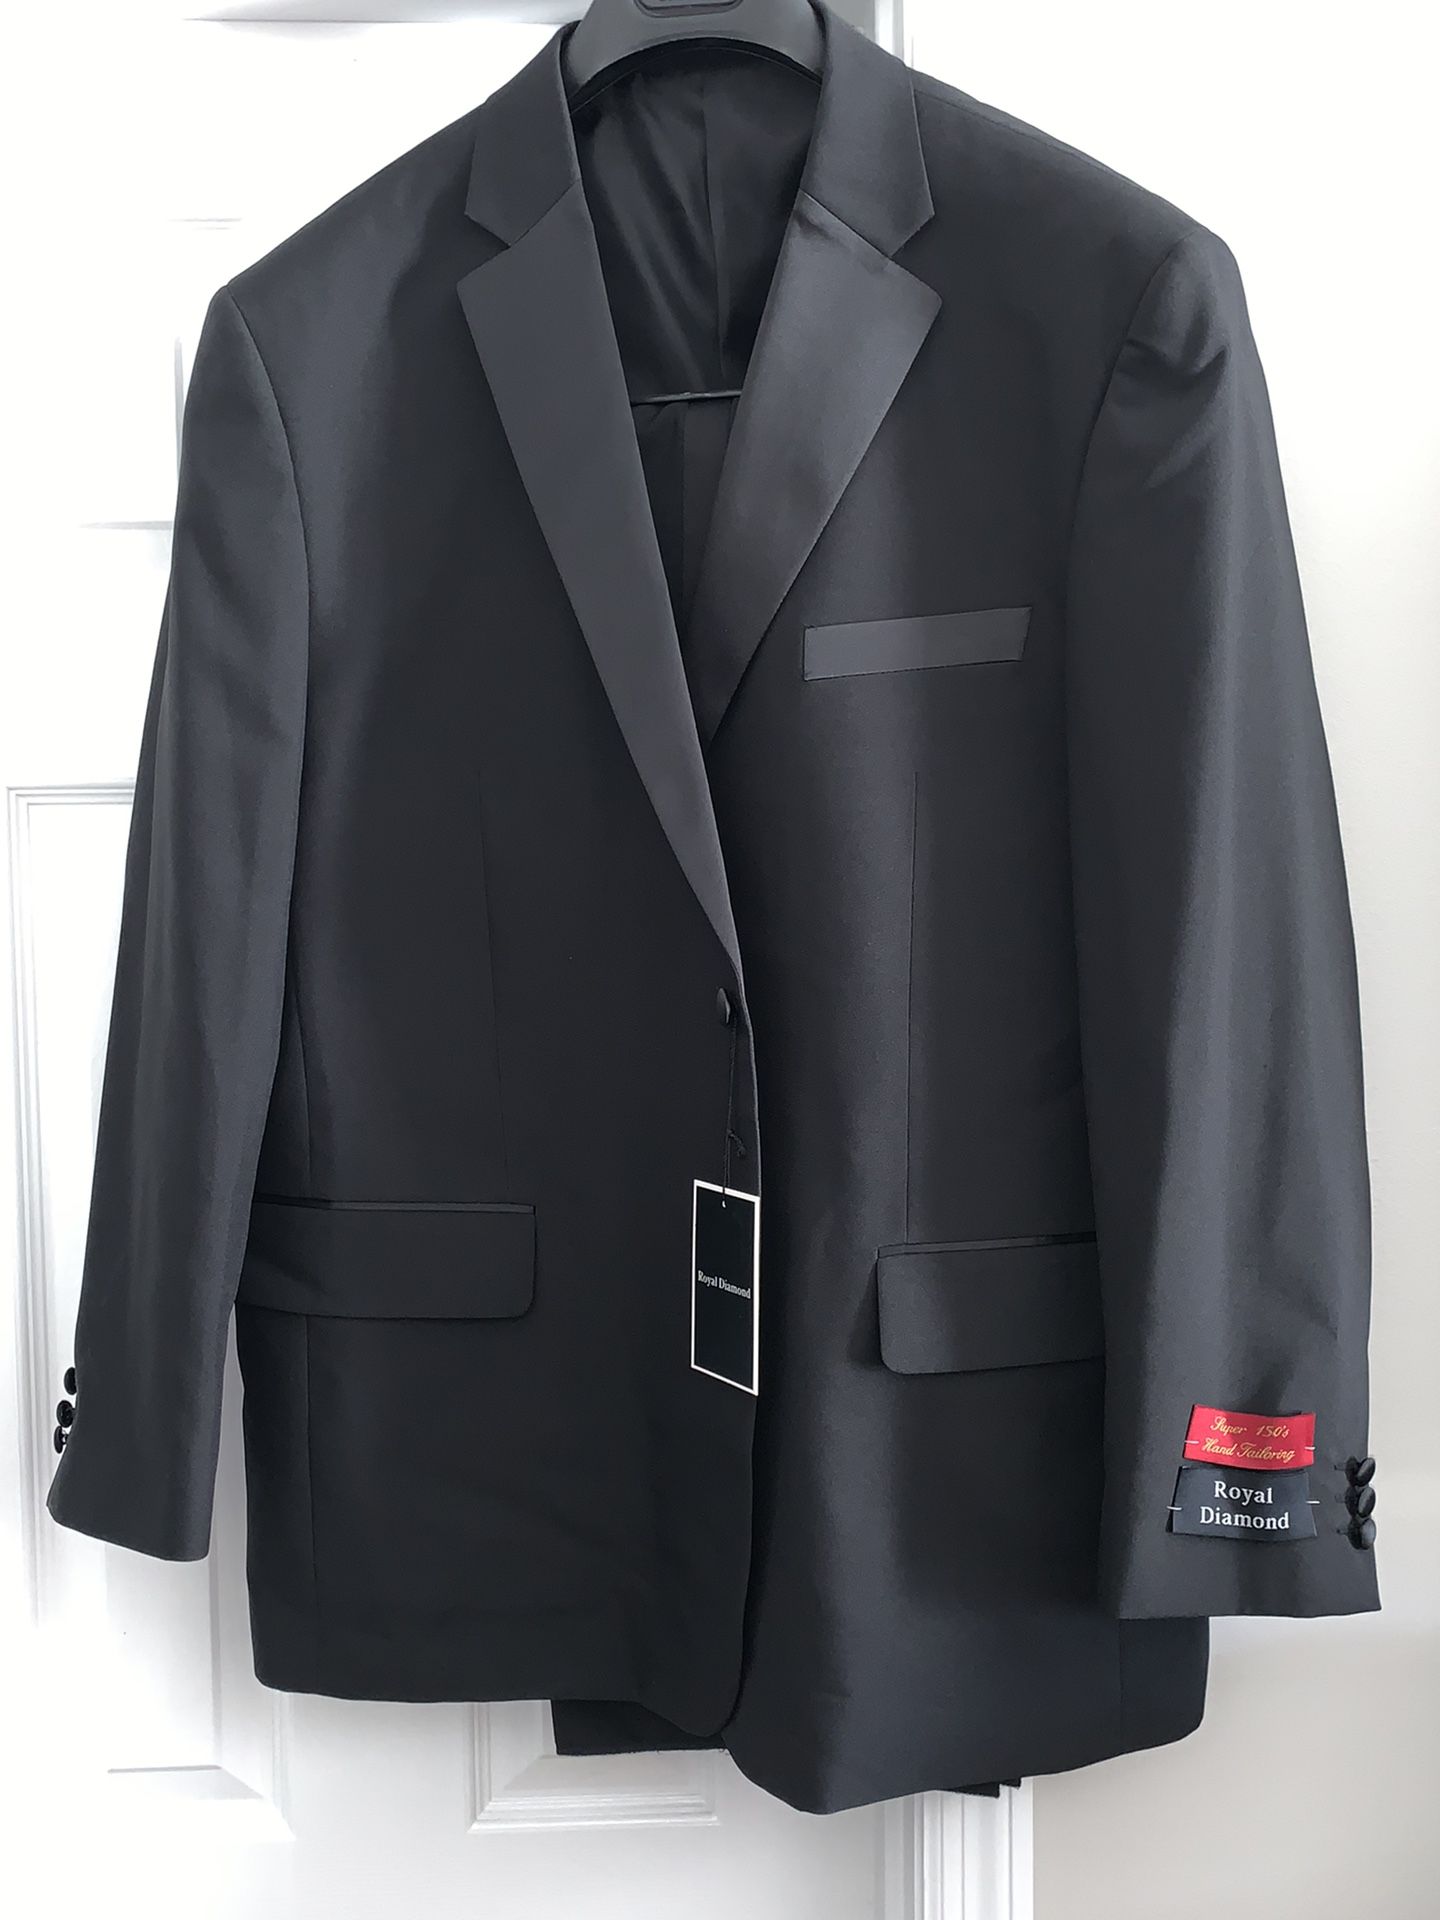 New 2 Piece Mens Black Tuxedo Suit 48R / 42W